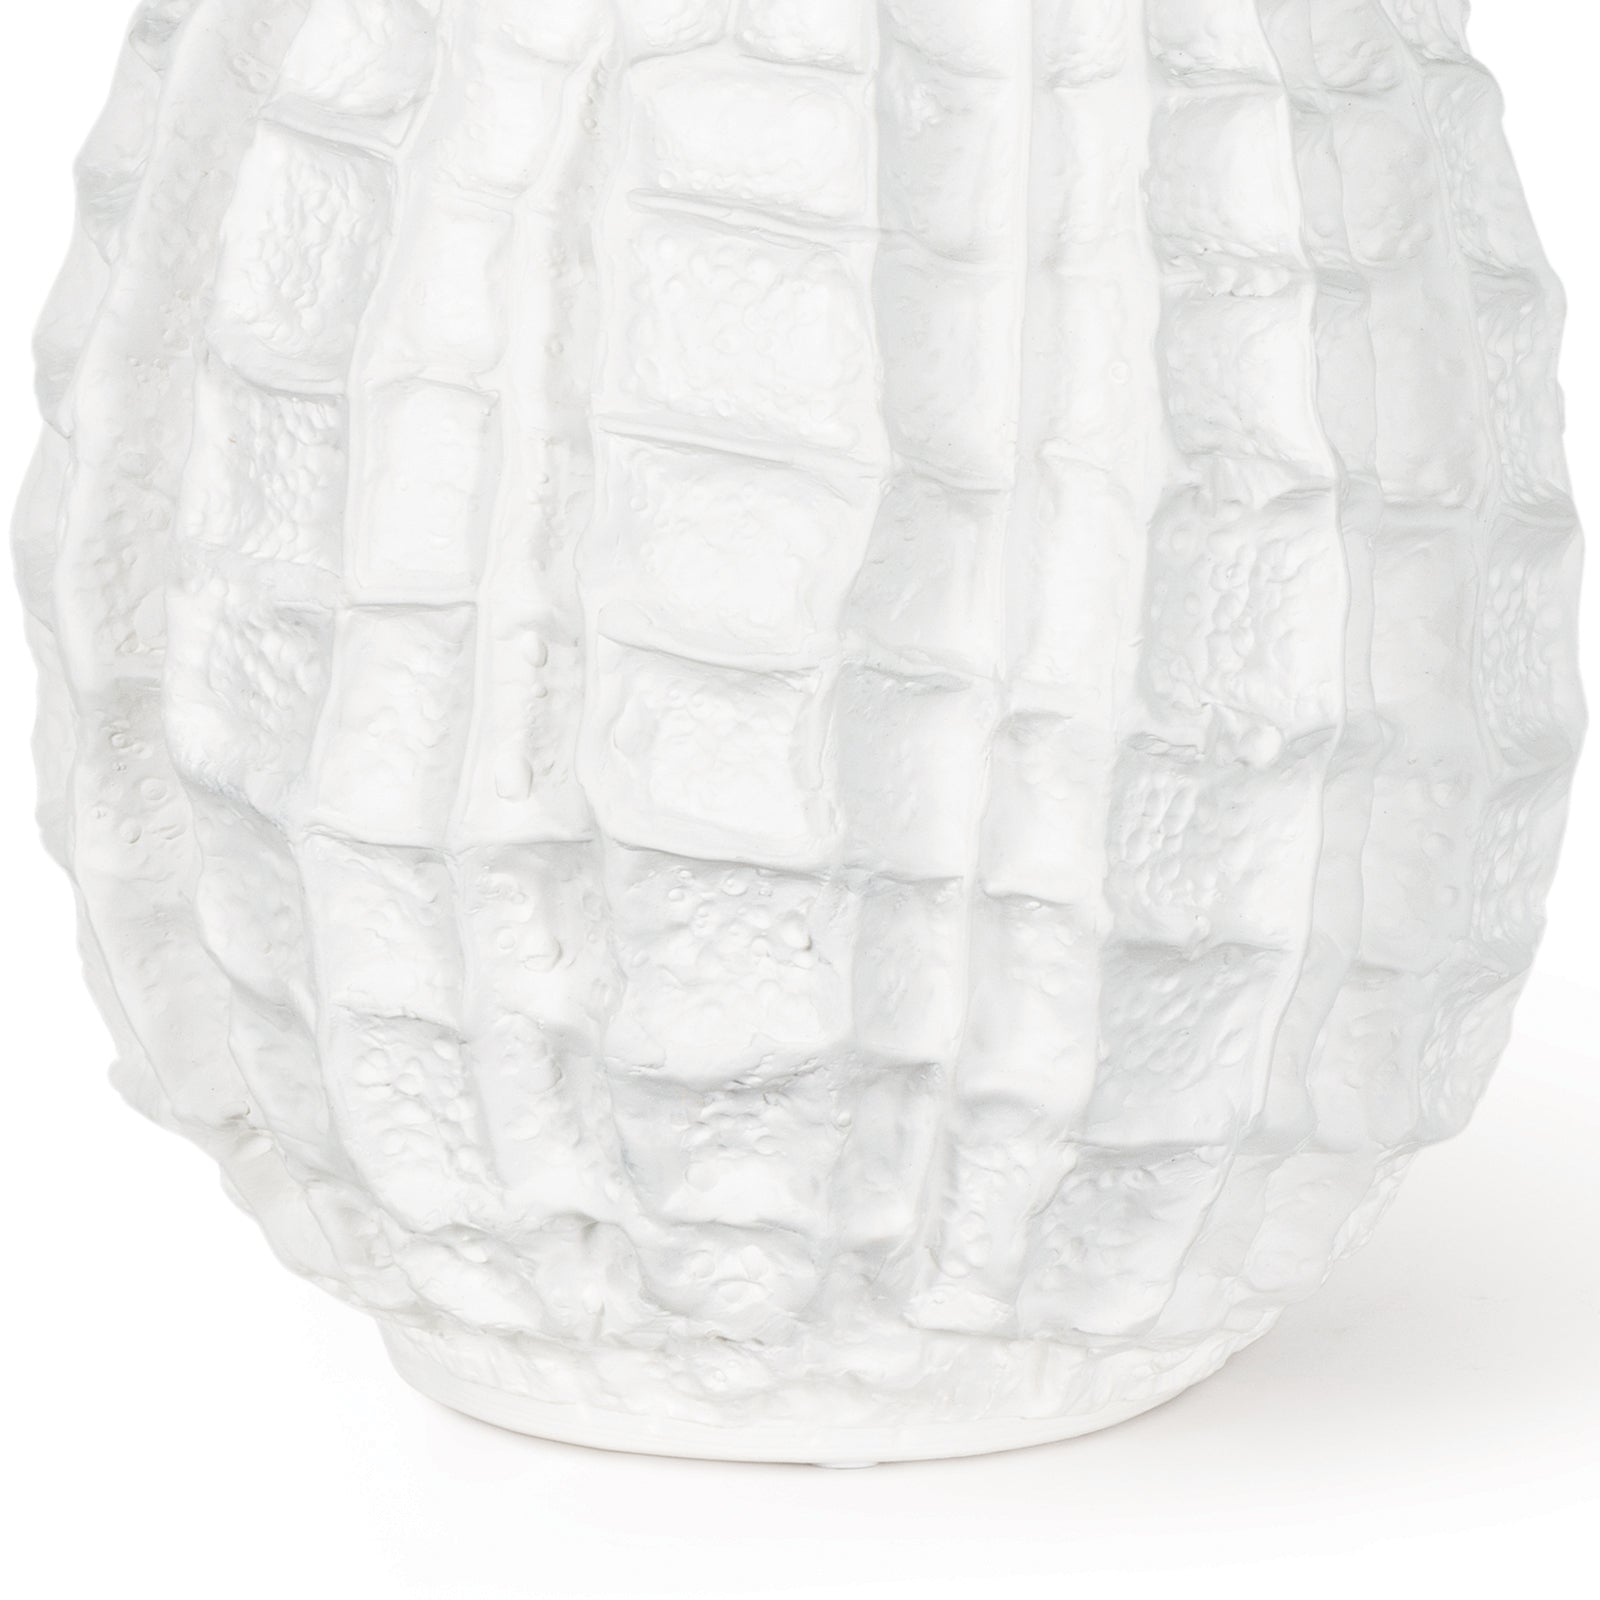 Caspian Ceramic Vase in White by Regina Andrew